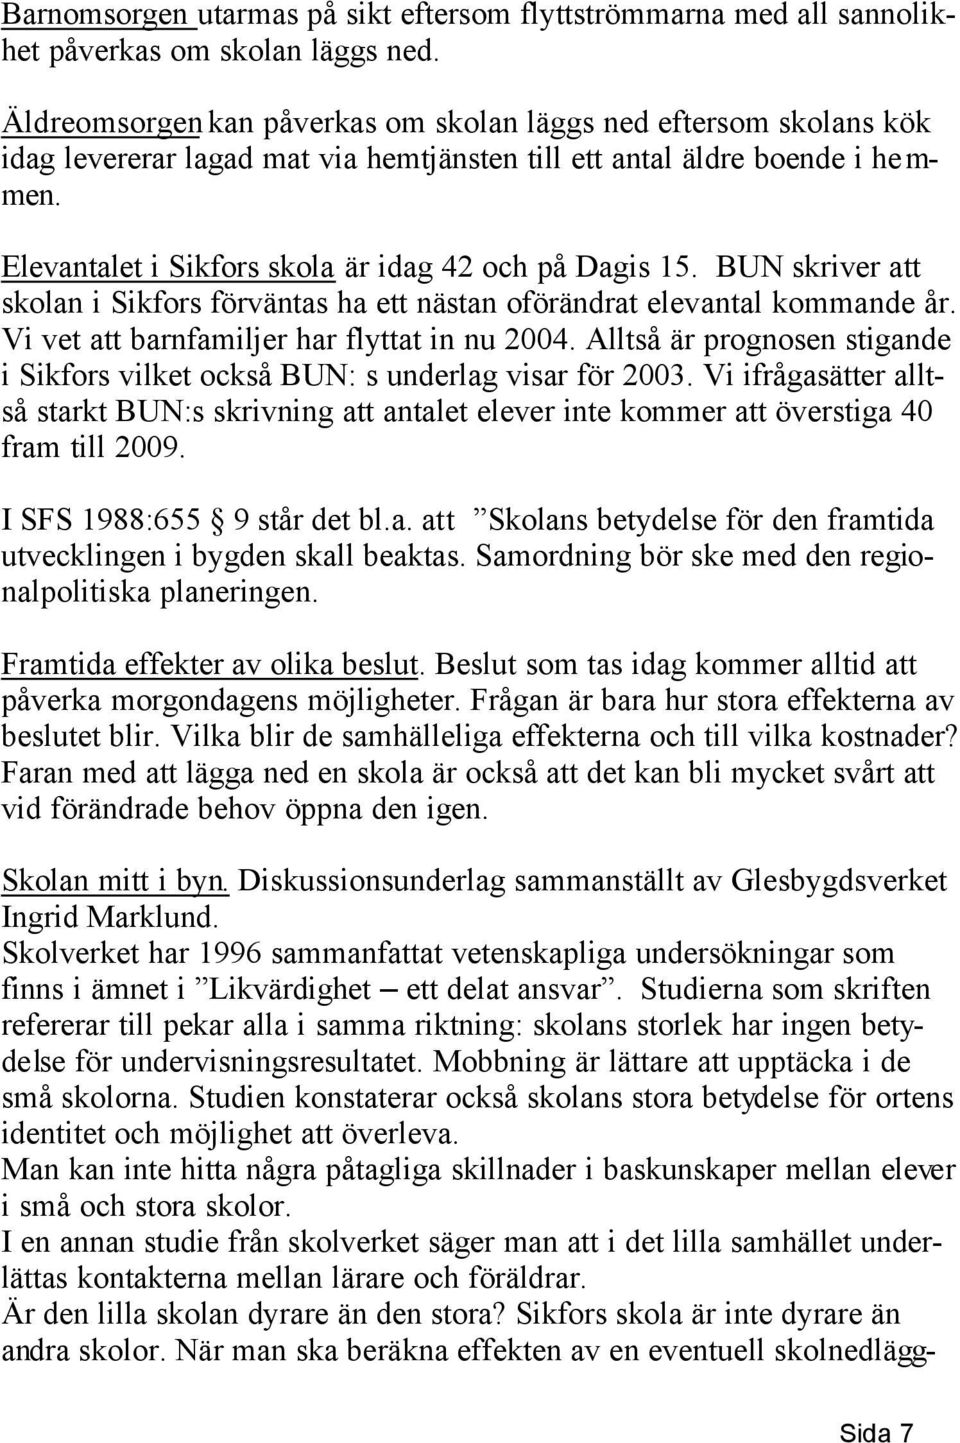 Elevantalet i Sikfors skola är idag 42 och på Dagis 15. BUN skriver att skolan i Sikfors förväntas ha ett nästan oförändrat elevantal kommande år. Vi vet att barnfamiljer har flyttat in nu 2004.